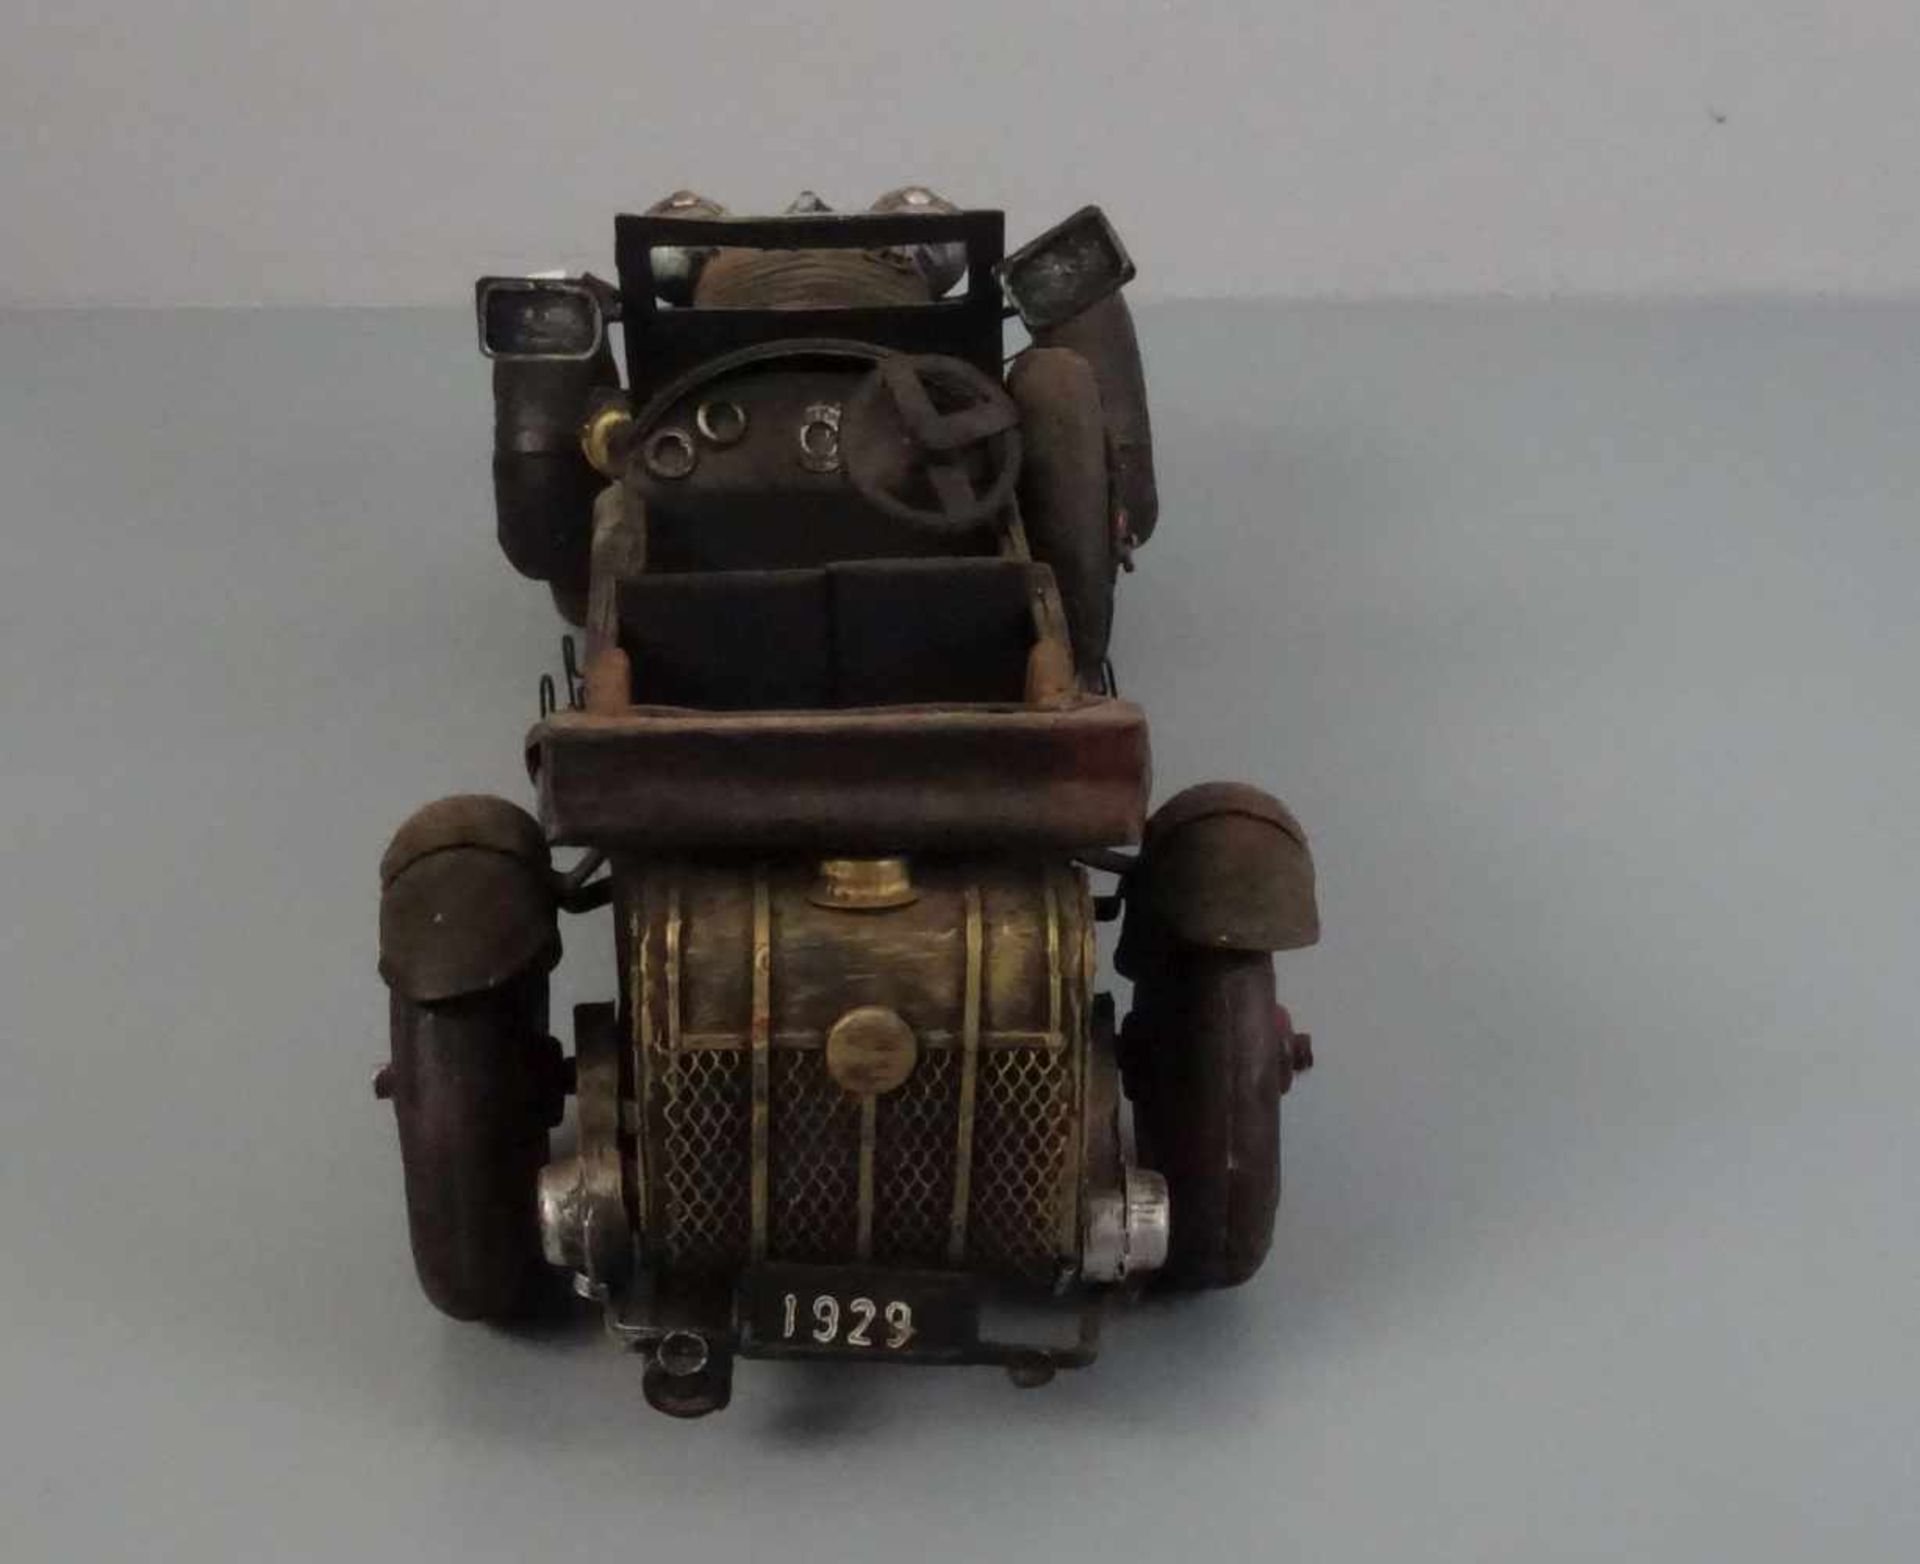 BLECHSPIELZEUG / MODELLAUTO "Oldtimer" / tin toy car, Eisenblech, teils durchbrochen gearbeitet - Bild 4 aus 5